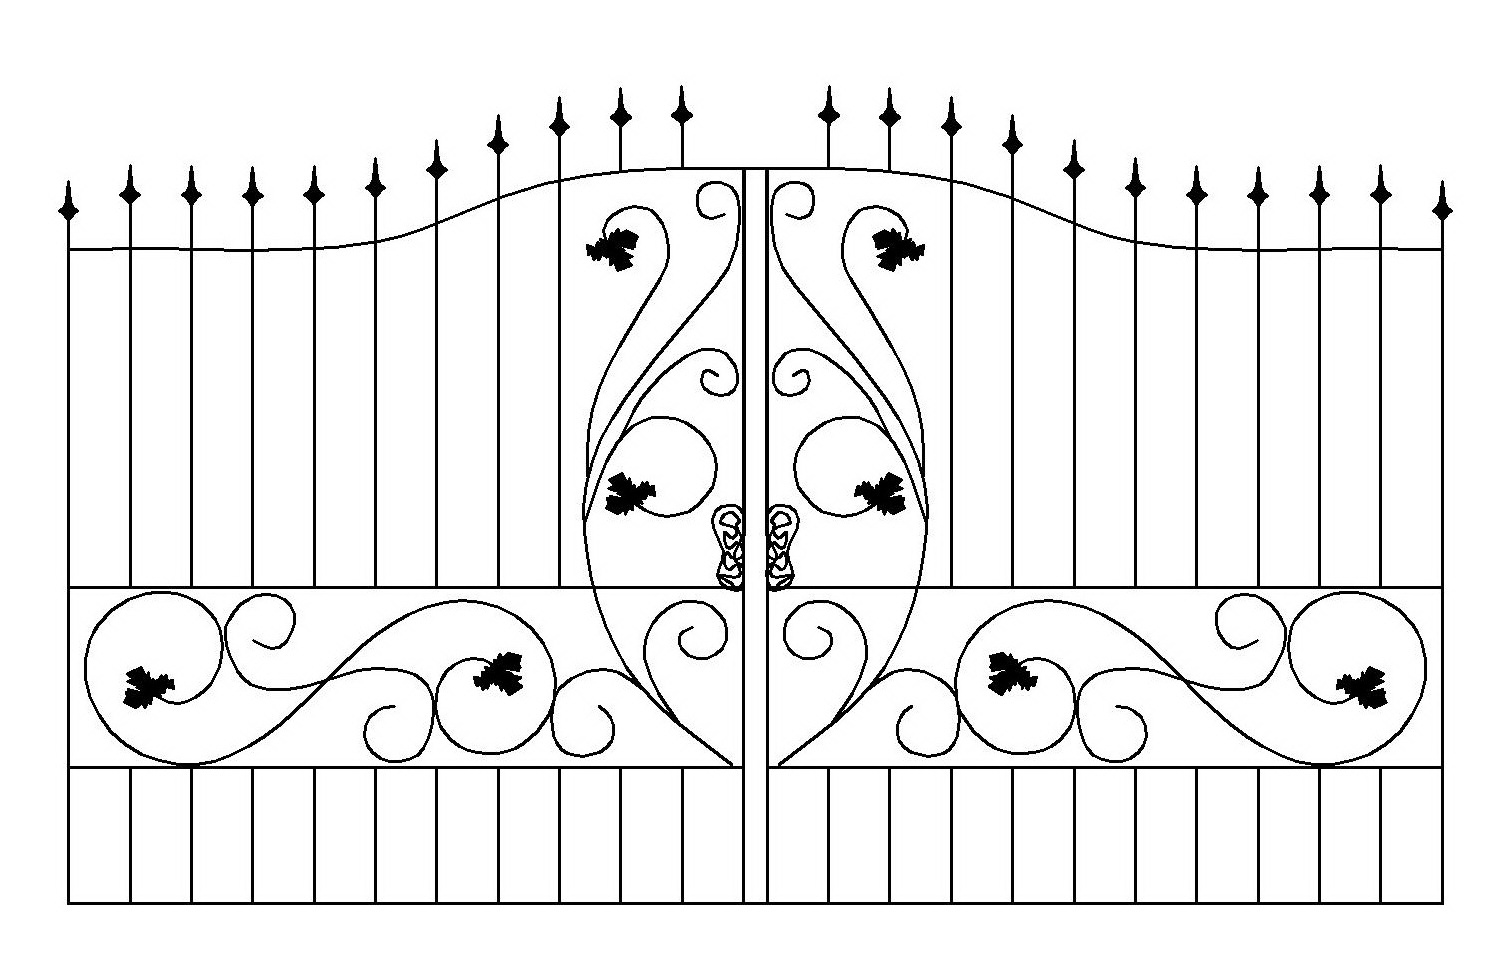 Самостоятельное строительство кованых ворот